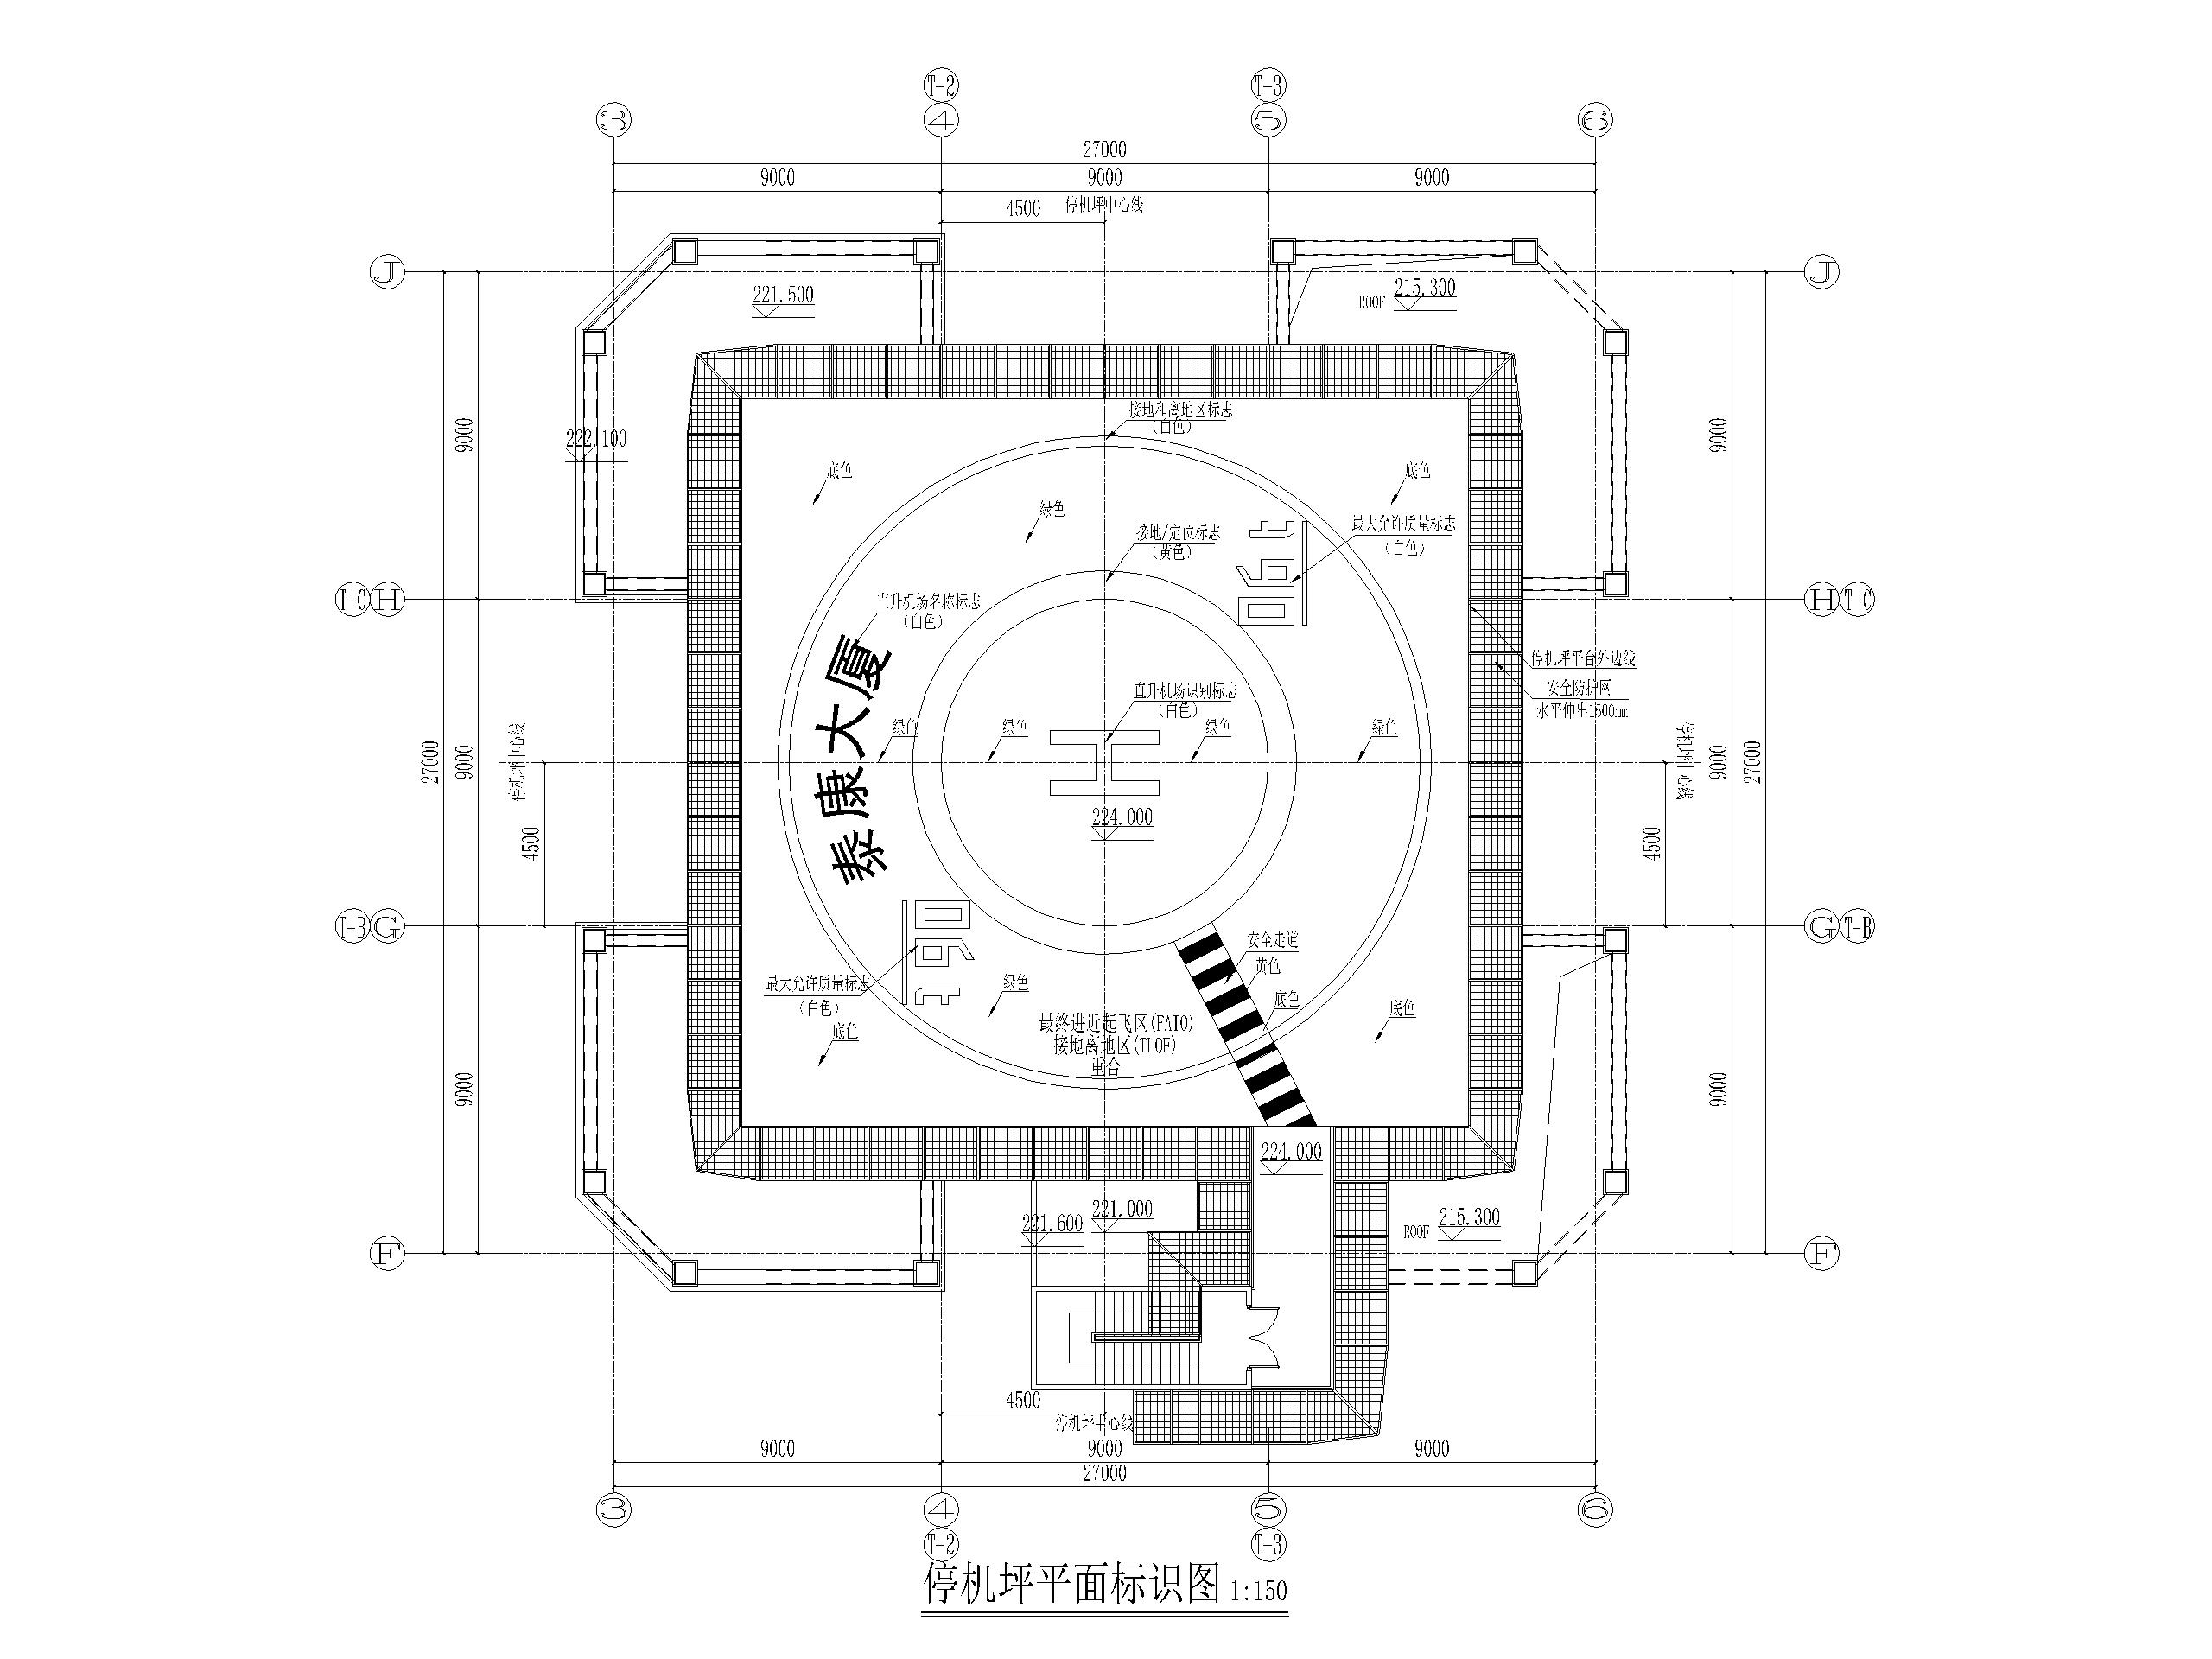 北京CBD核心区屋顶直升机停机坪设计施工图-停机坪平面标识图